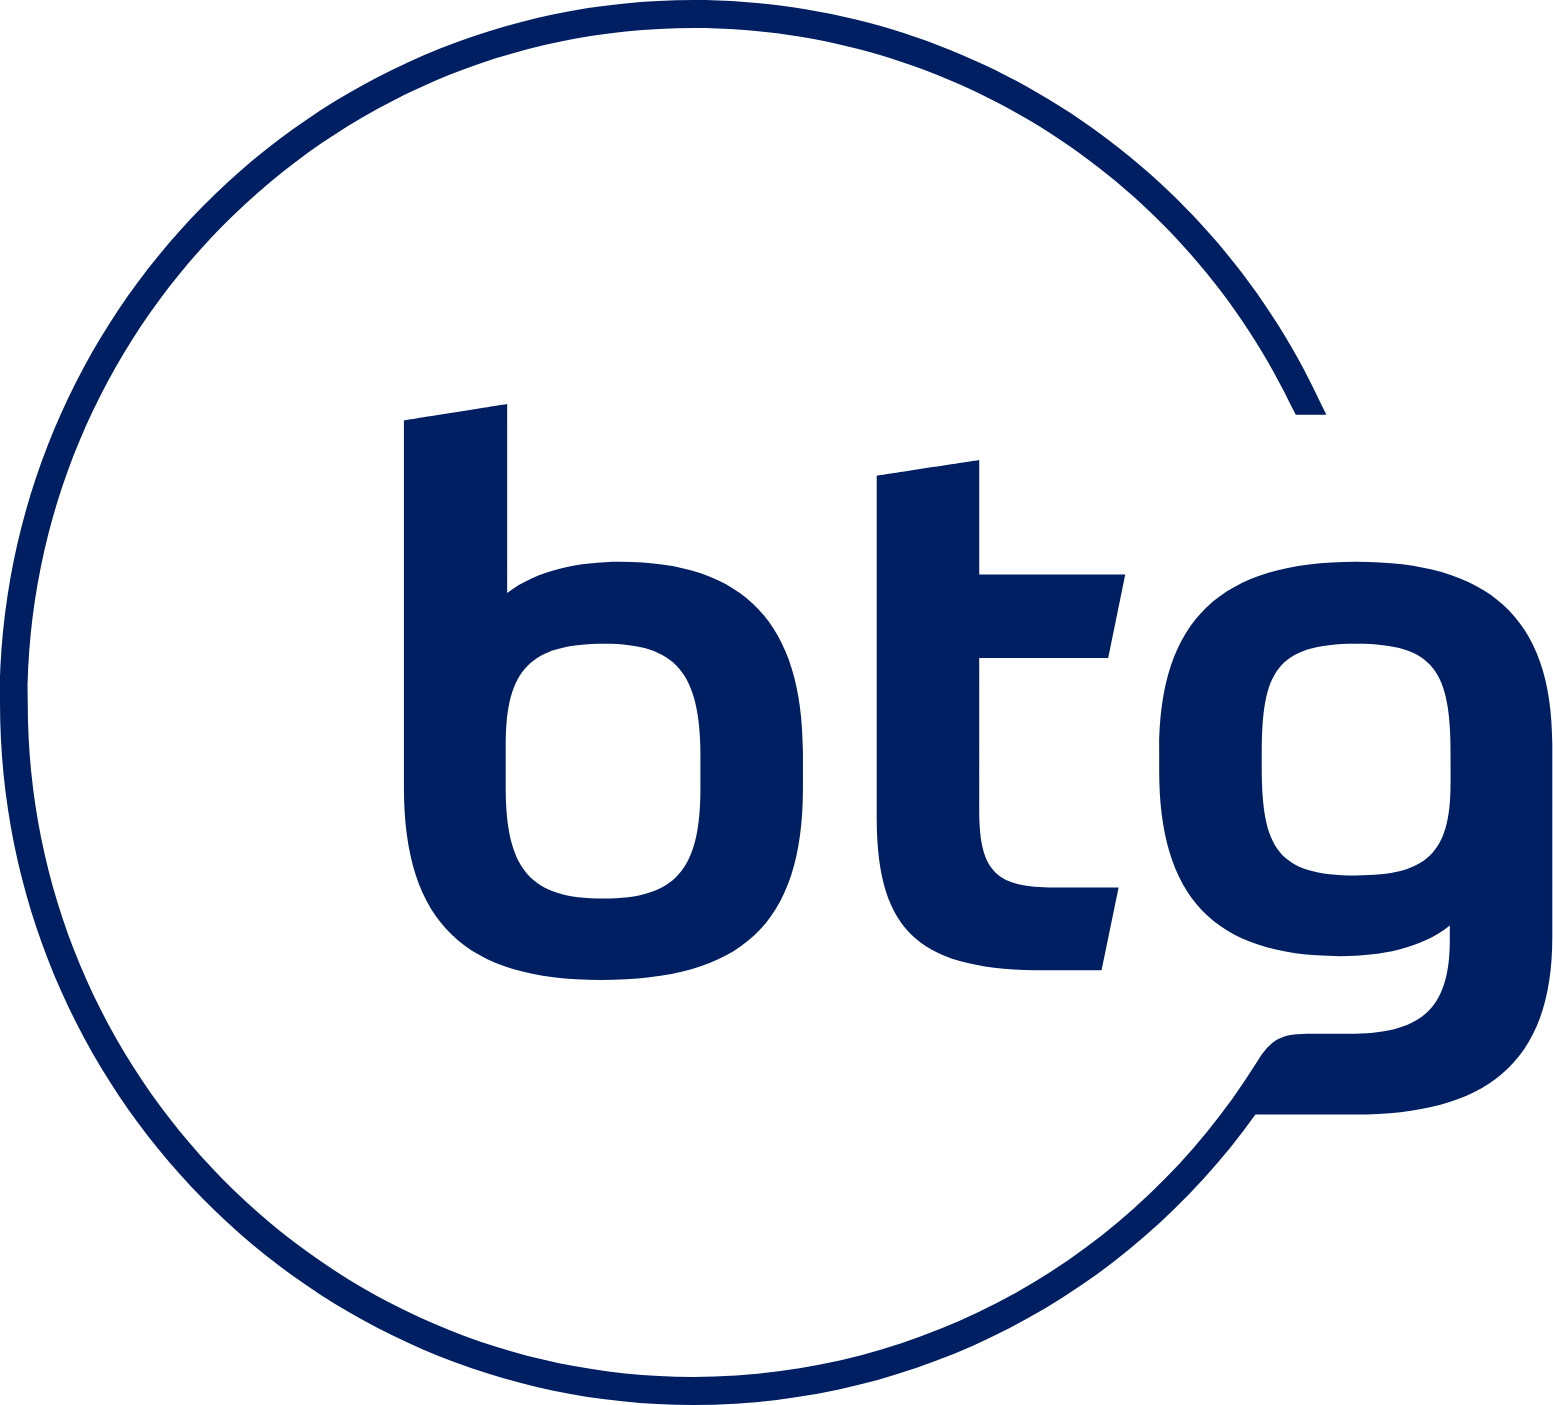 BTG Pactual logo (PNG transparent)